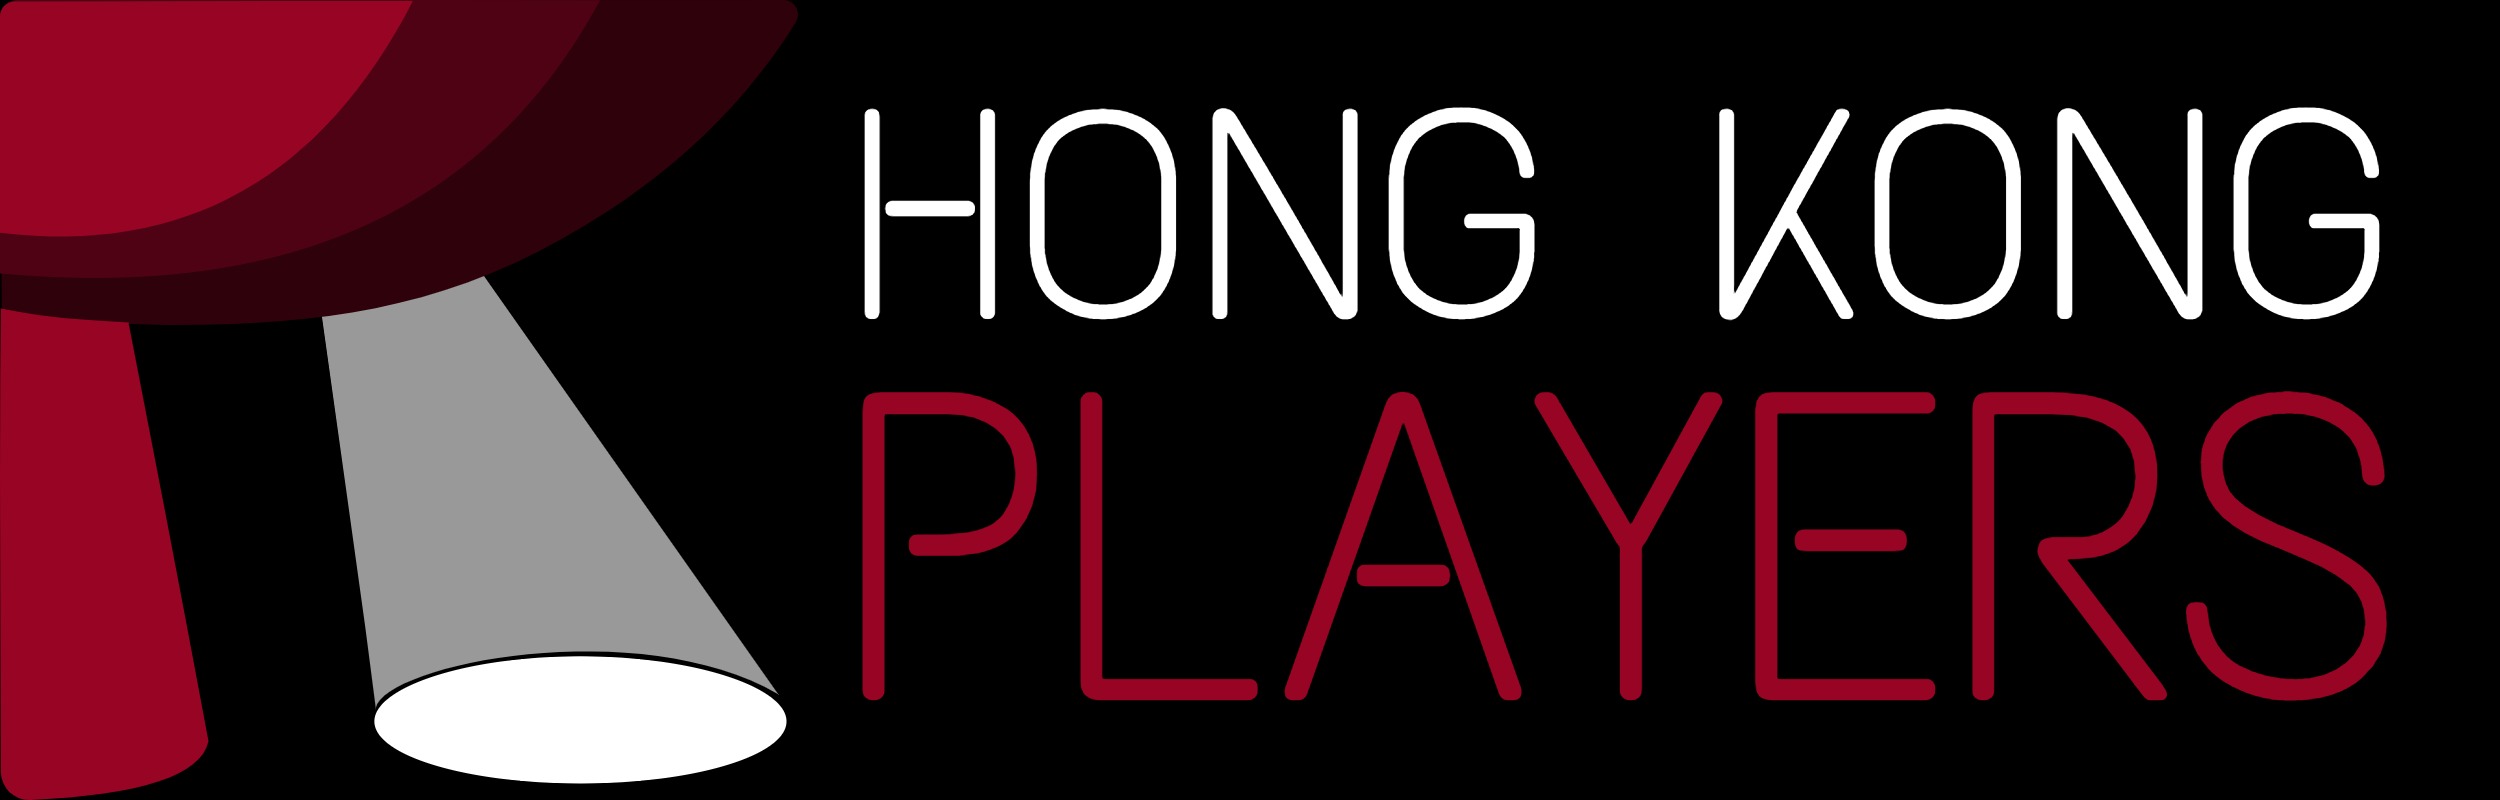 Hong Kong Players Logo 2020